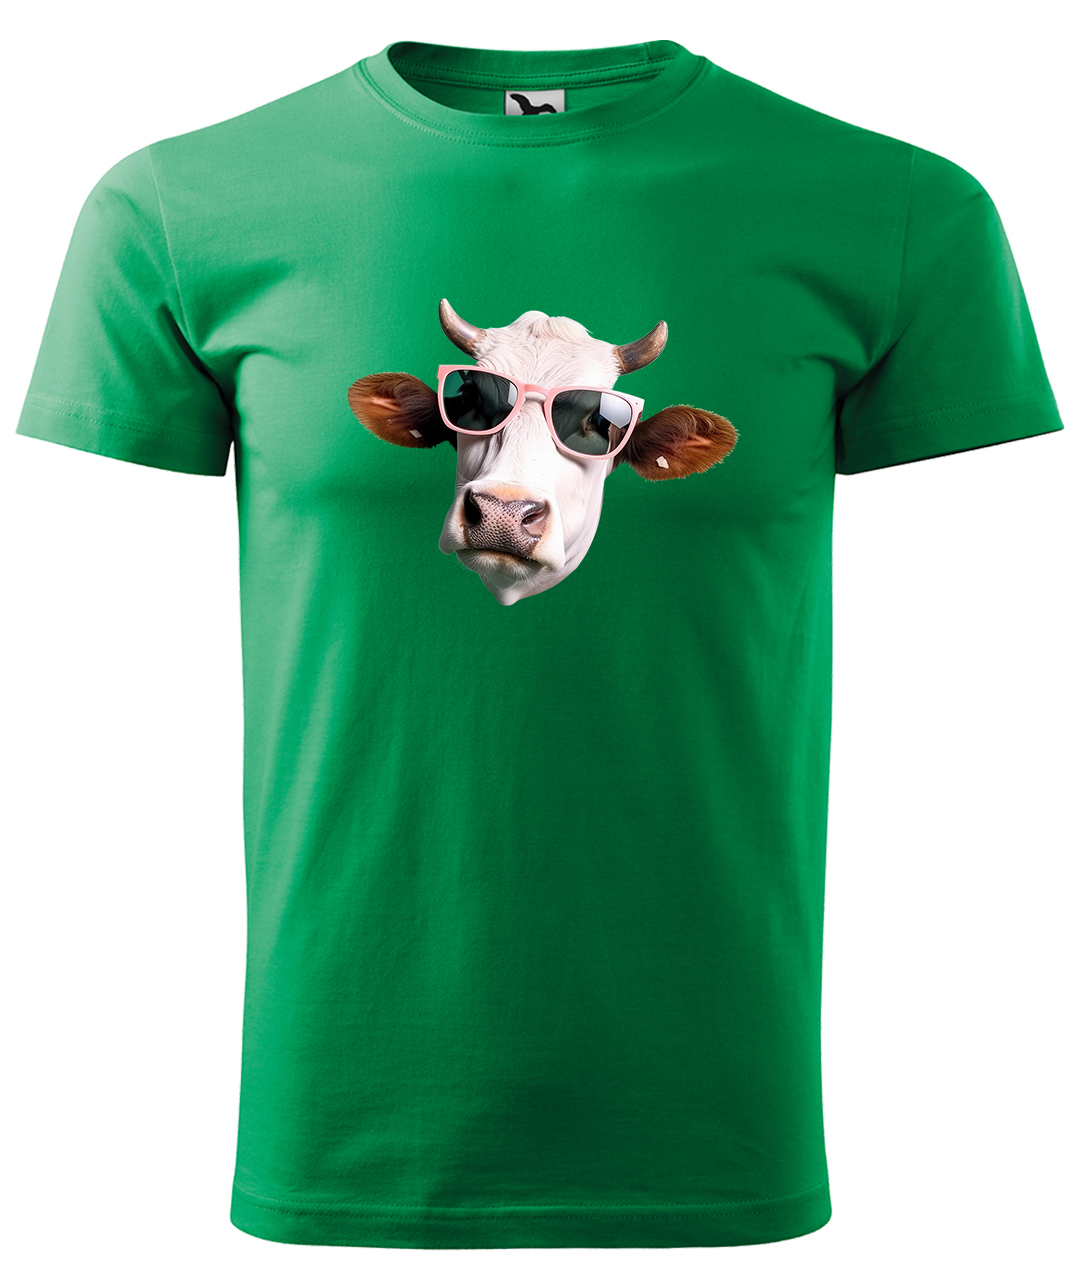 Dětské tričko s krávou - Kráva v brýlích Velikost: 10 let / 146 cm, Barva: Středně zelená (16), Délka rukávu: Krátký rukáv